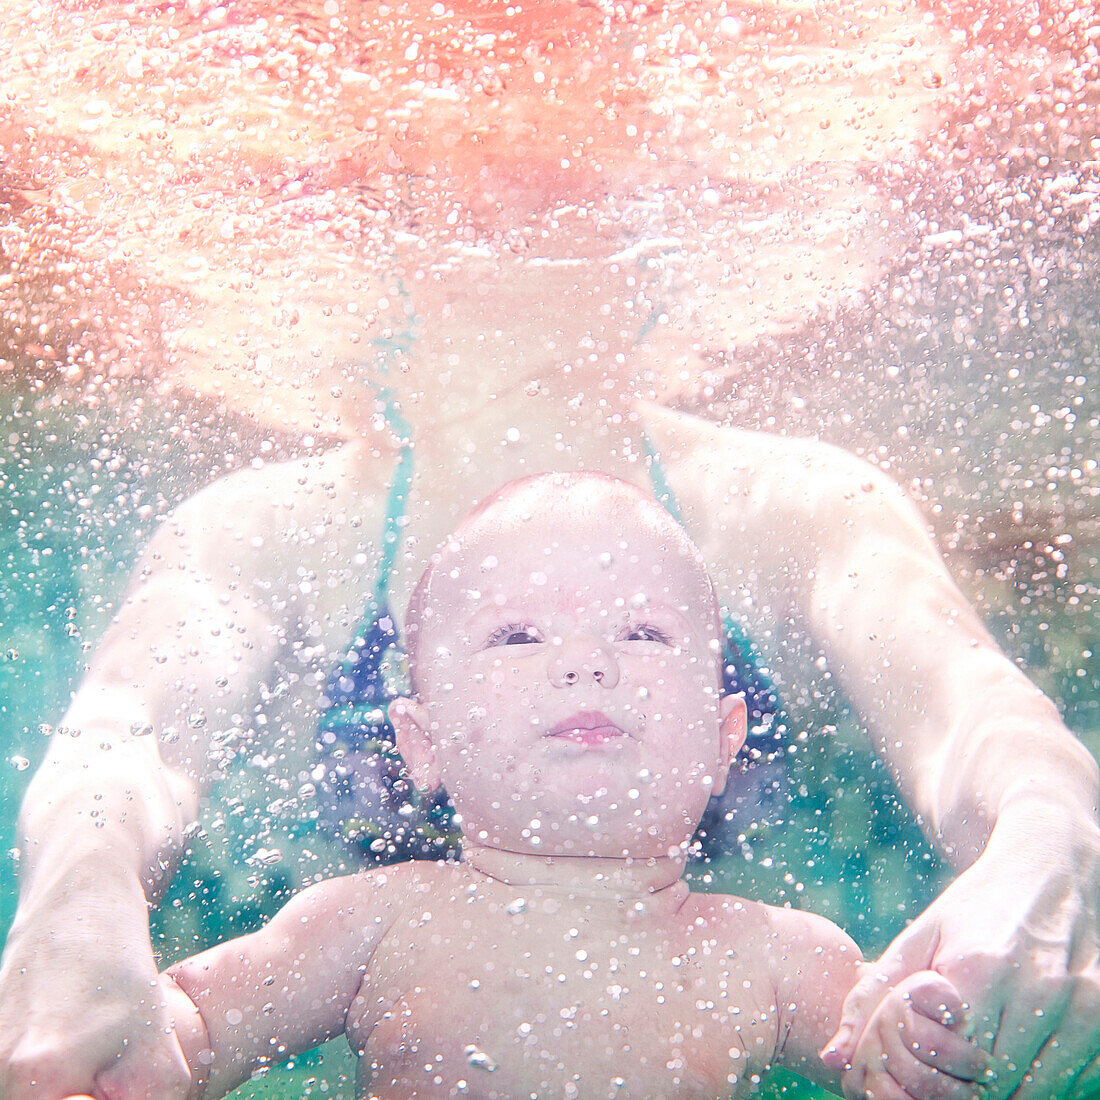 Caucasian mother and preschooler son swimming underwater